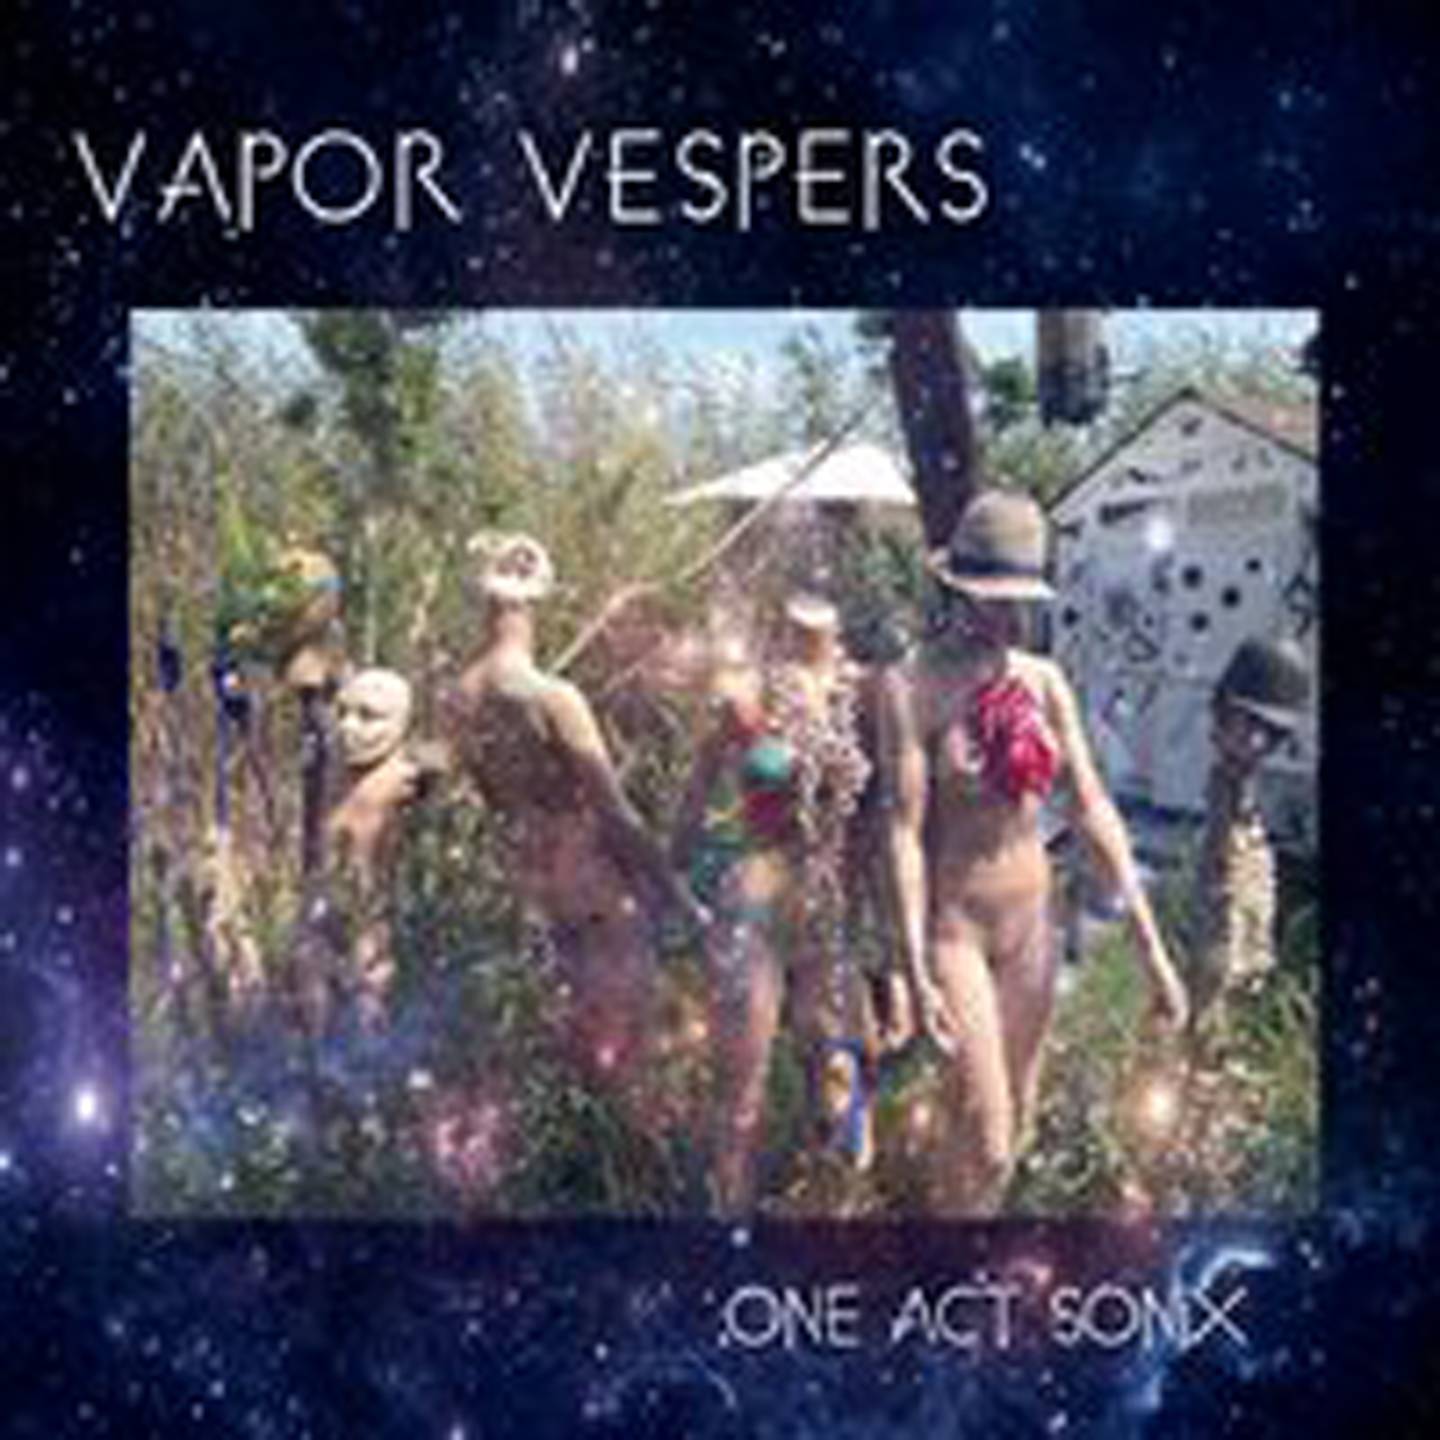 Vapor Vespers, One Act Sonix